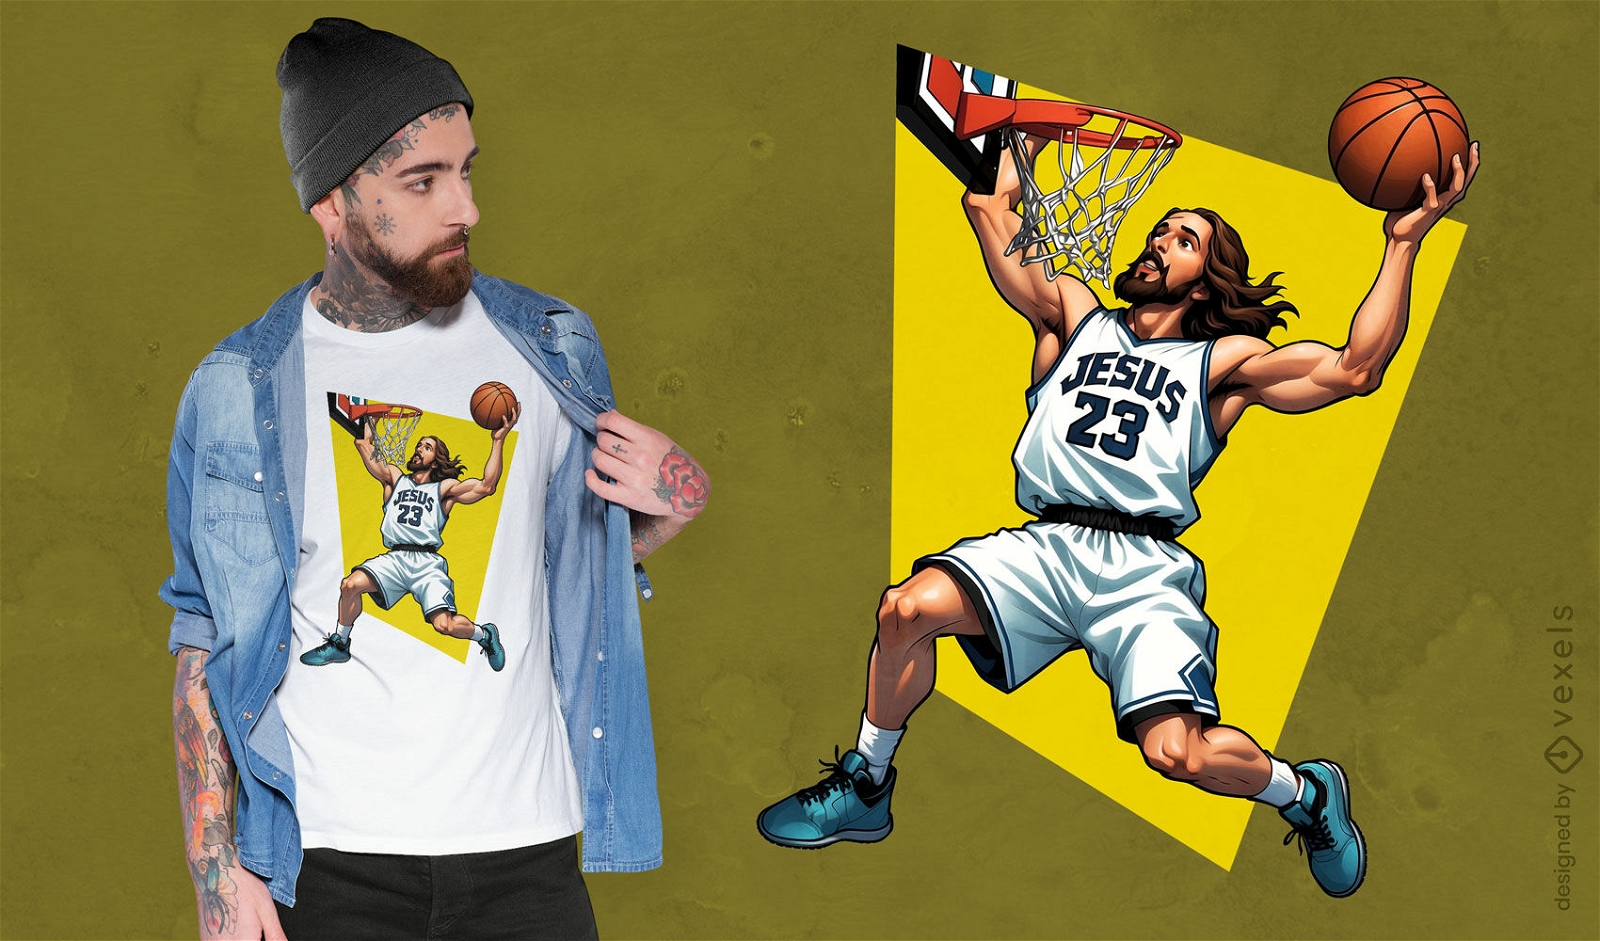 Dise?o de camiseta Athletic Jesus slam dunk.